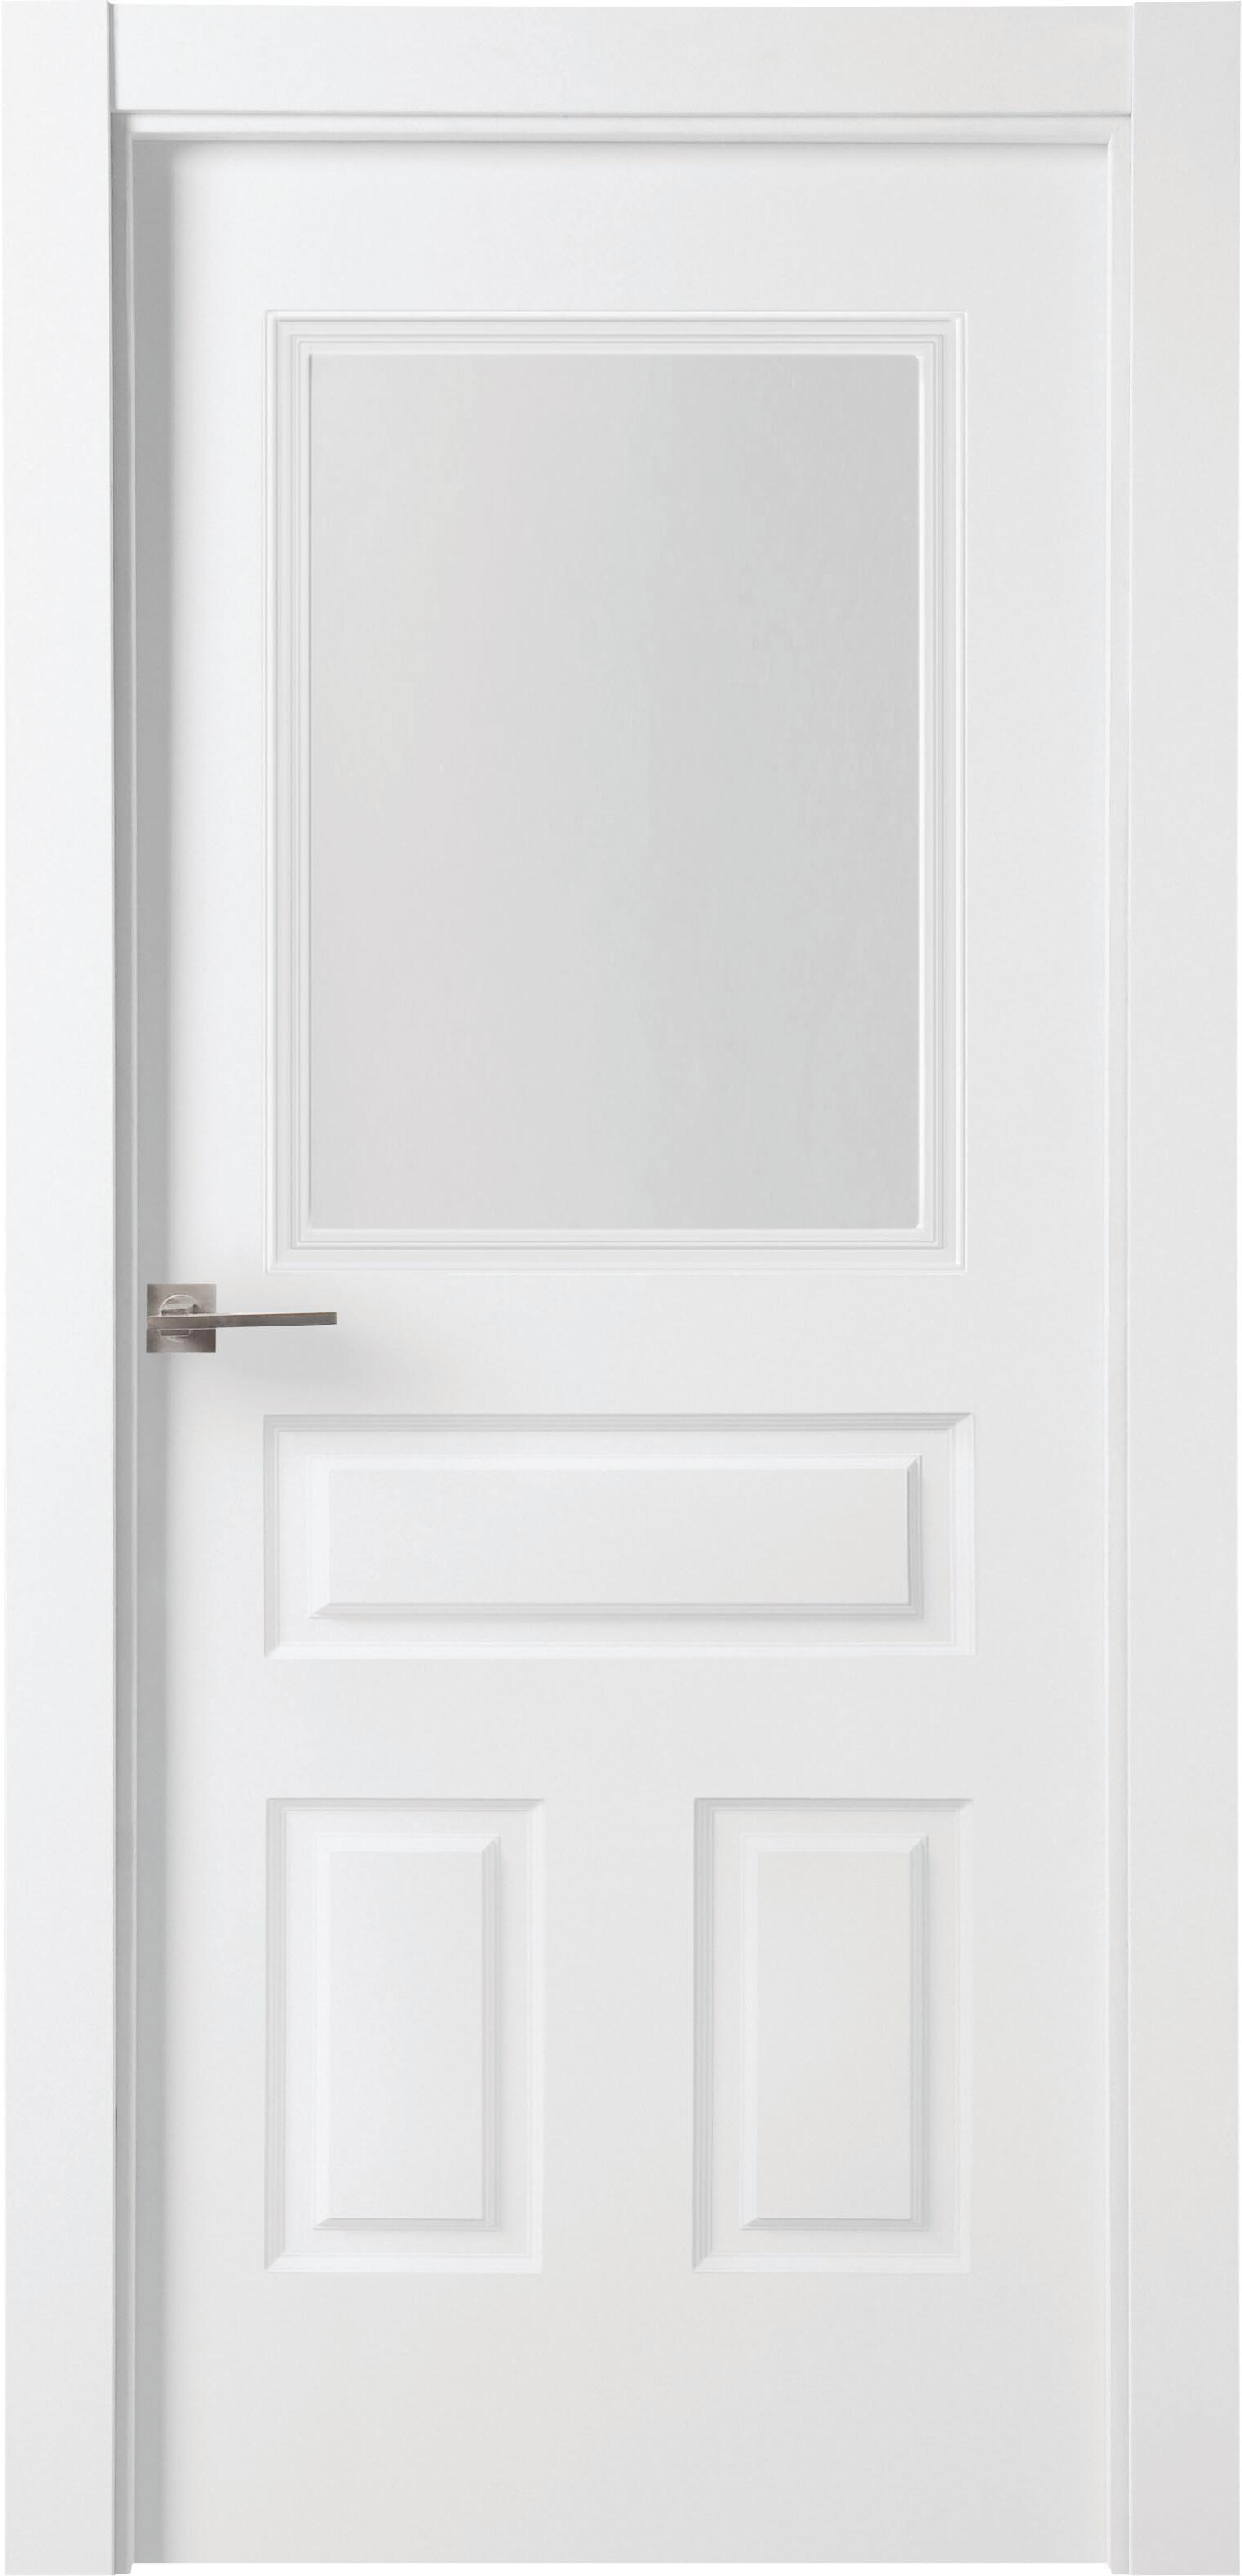 Puerta indiana plus blanco apertura derecha con cristal de 9x72,5cm